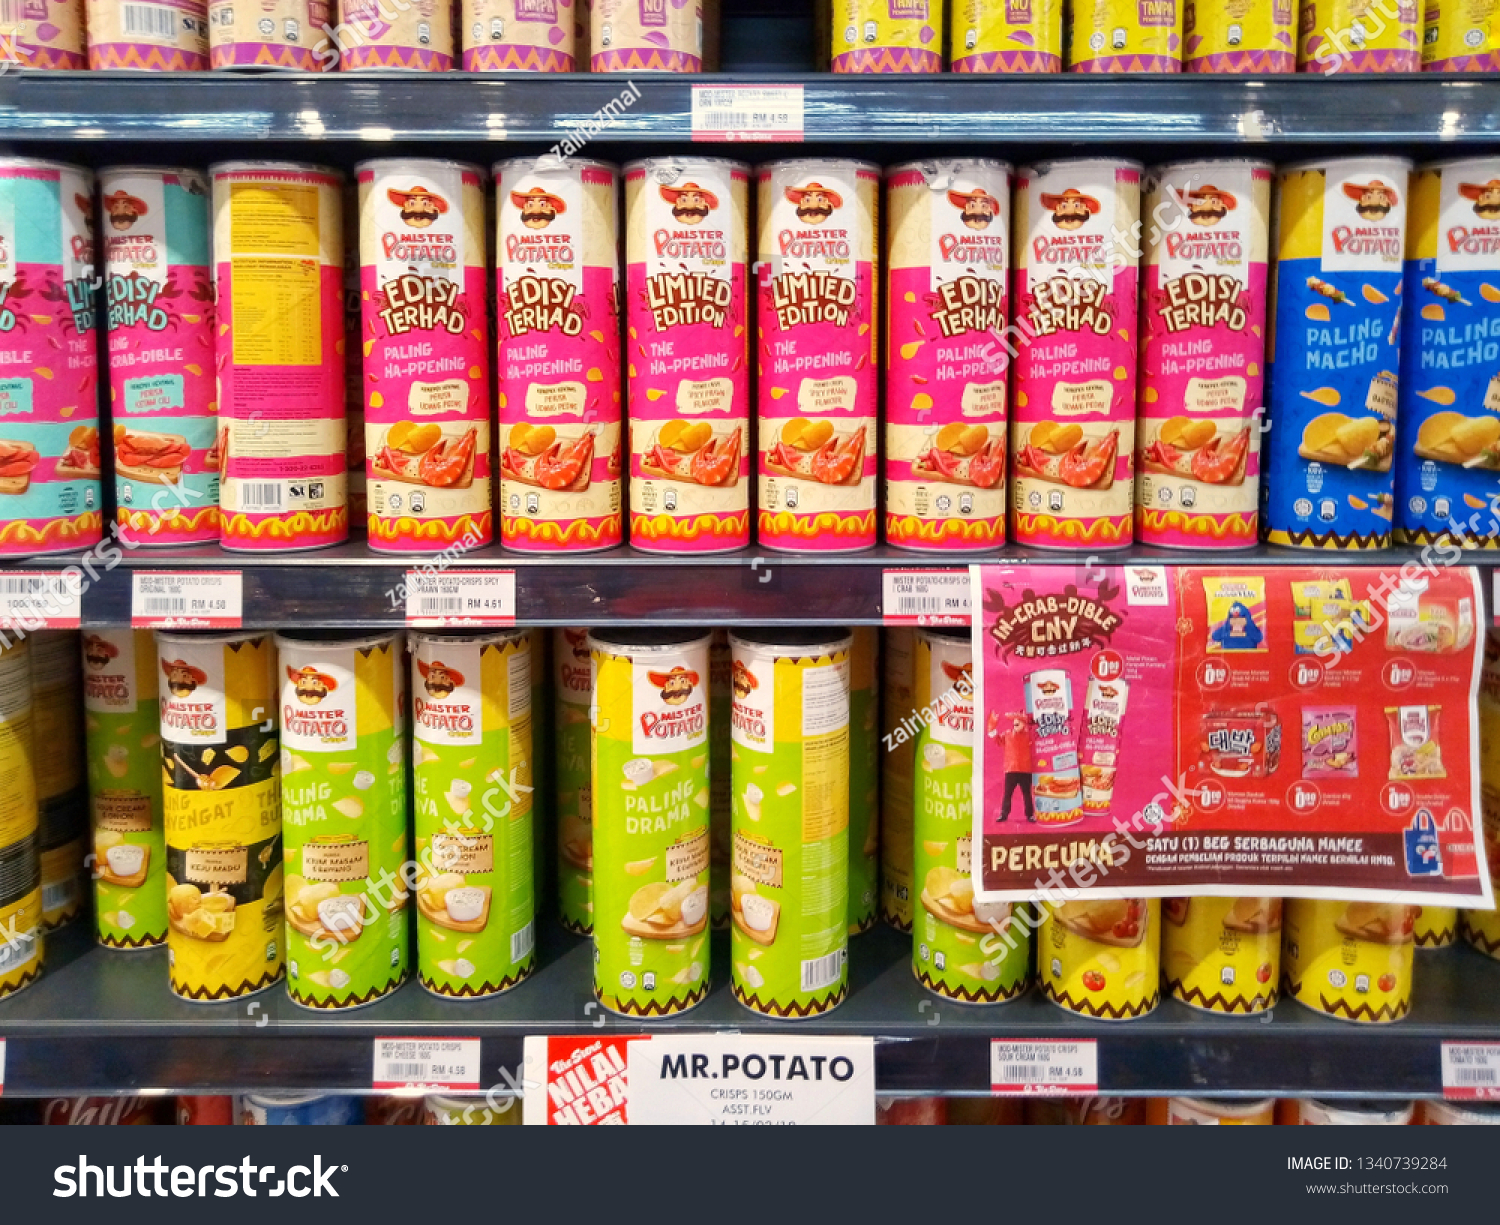 kota damansara, malaysia - march 16, 2019 : various junk food display on supermarket shelf #1340739284